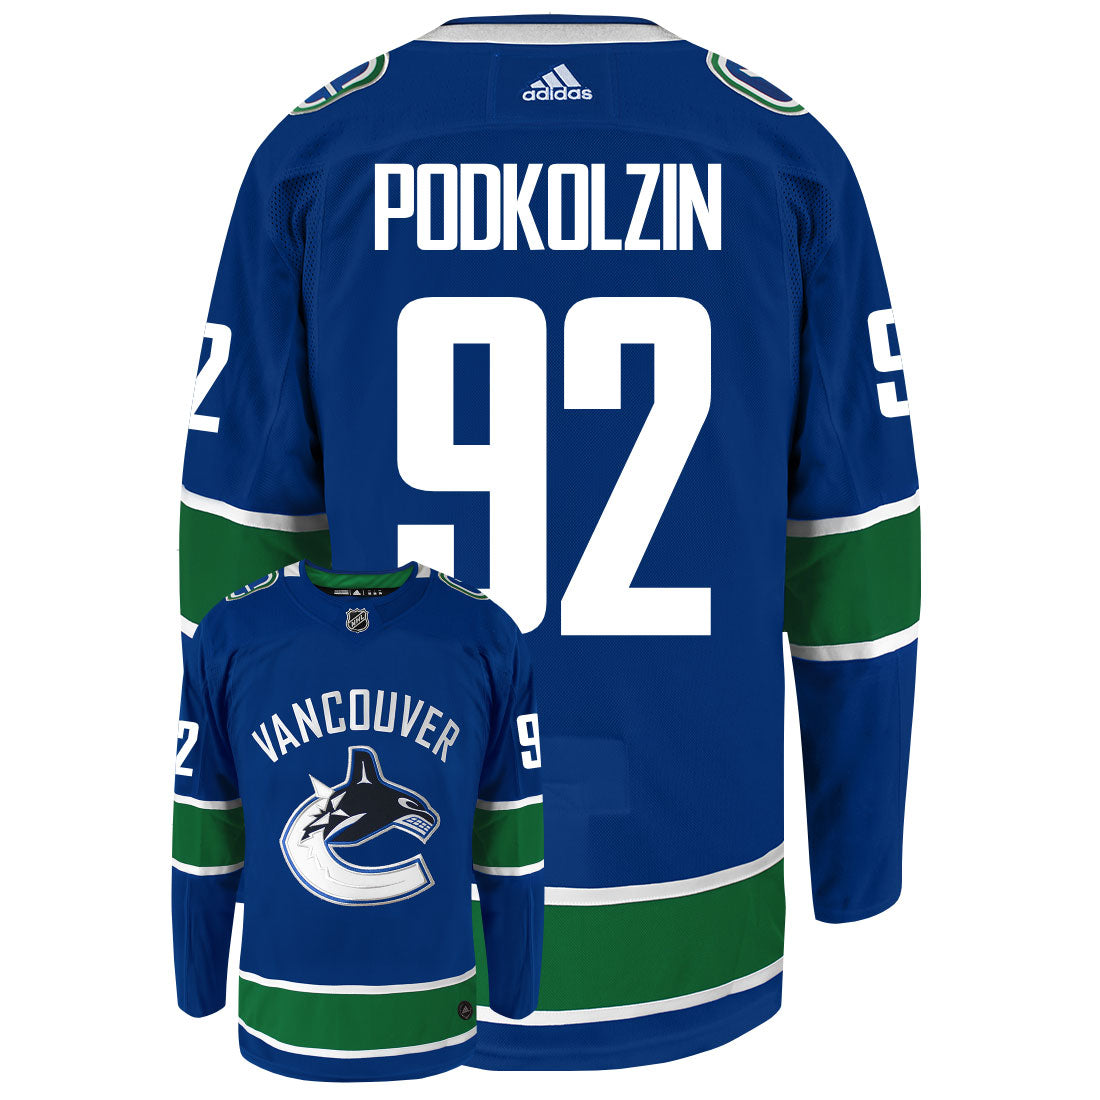 Vasily Podkolzin Vancouver Canucks Adidas Primegreen Authentic NHL Hockey Jersey